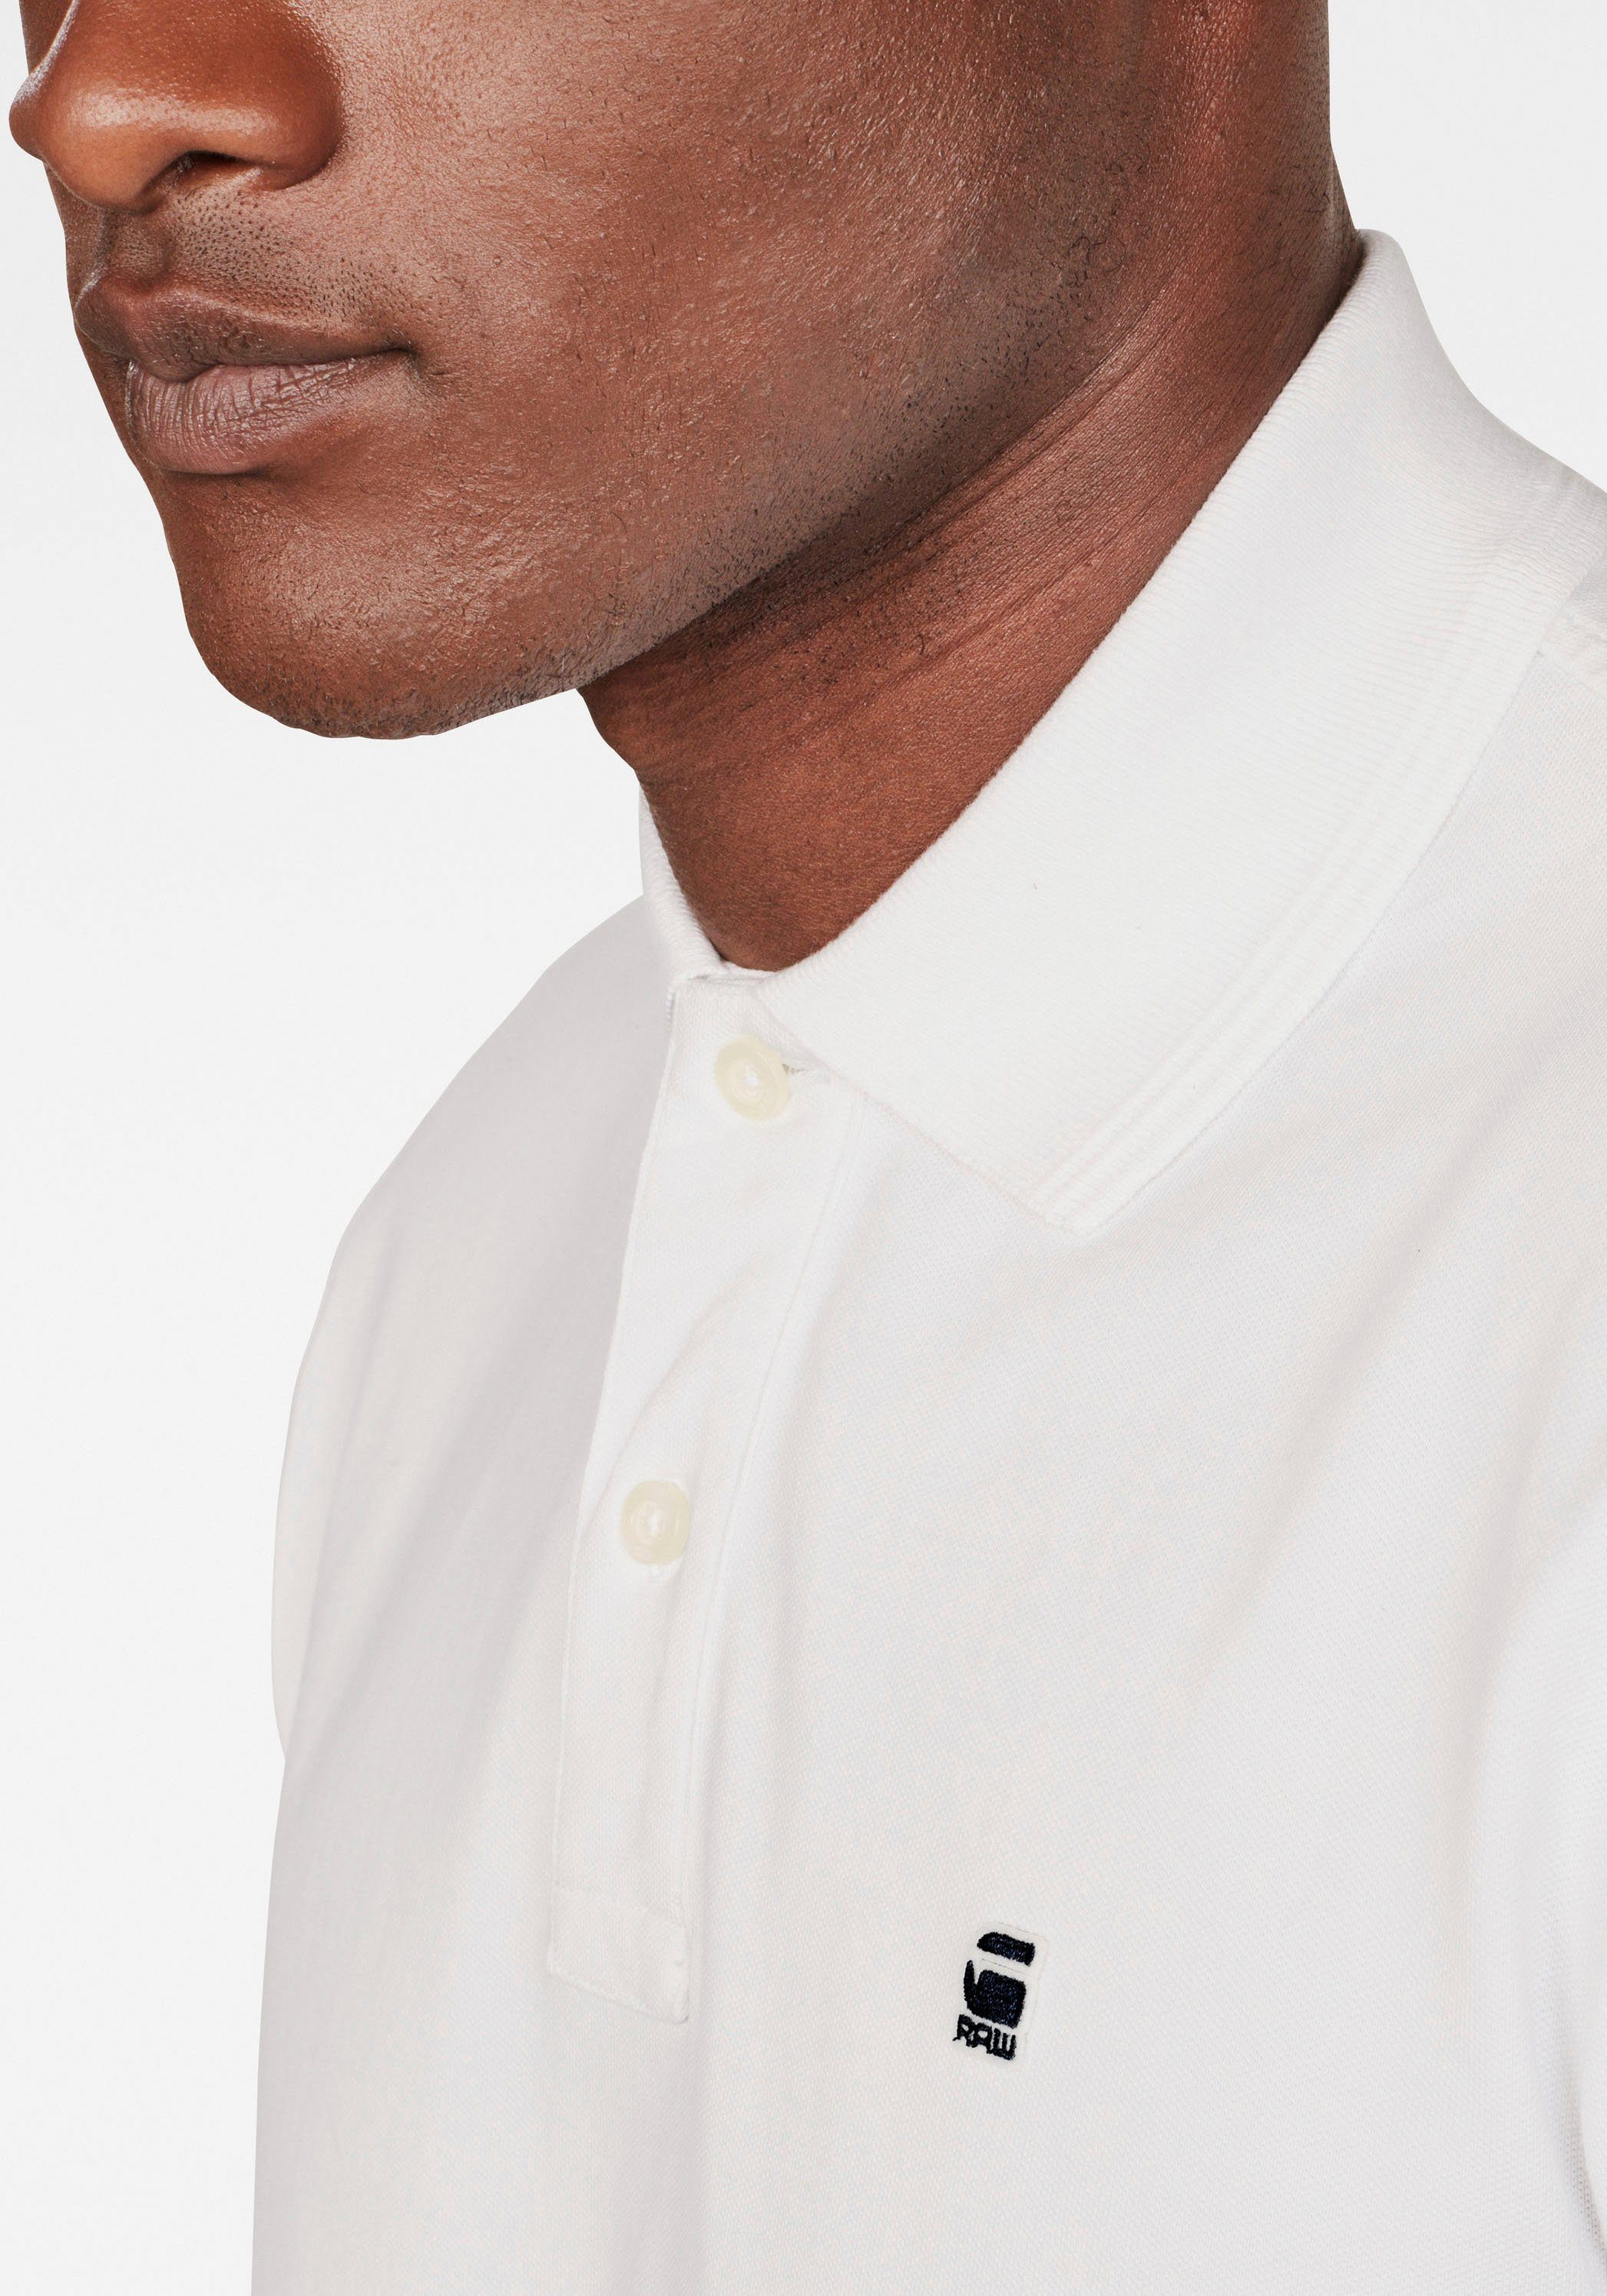 G-Star Logostickerei auf Polo weiß Poloshirt Dunda Brust der RAW